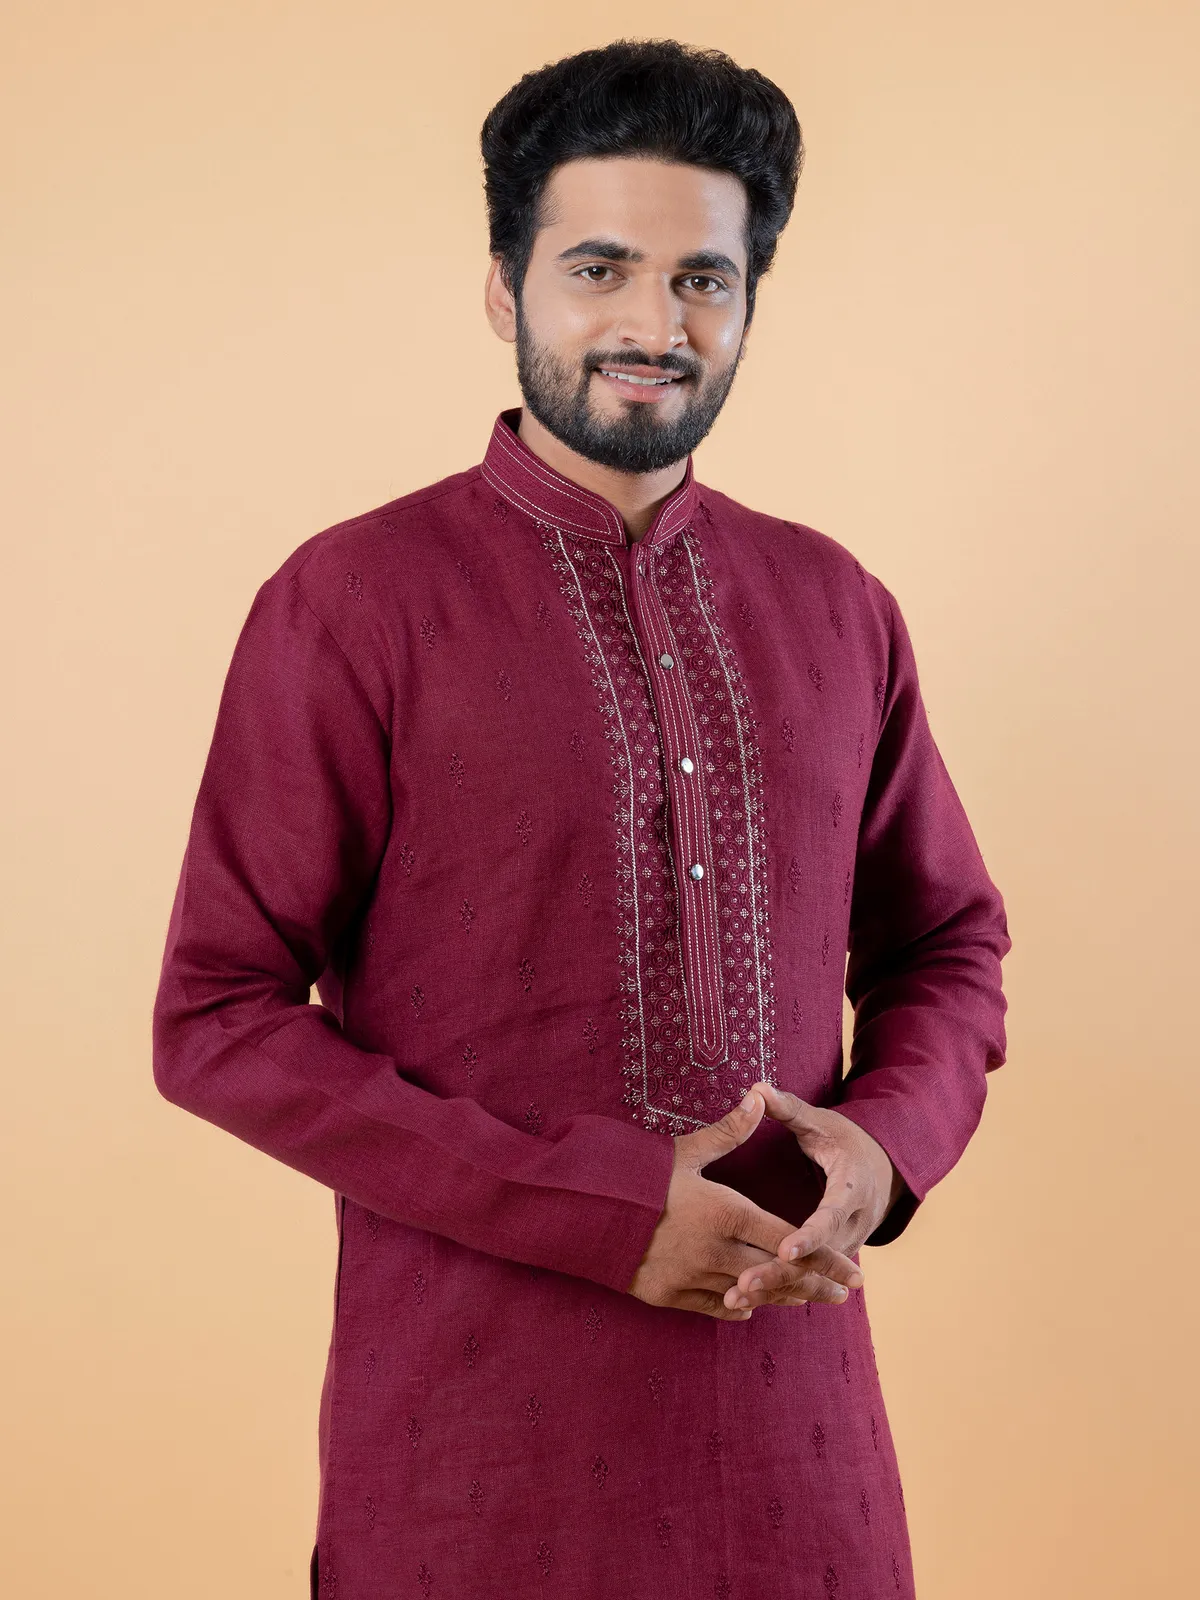 Stunning cotton maroon kurta suit